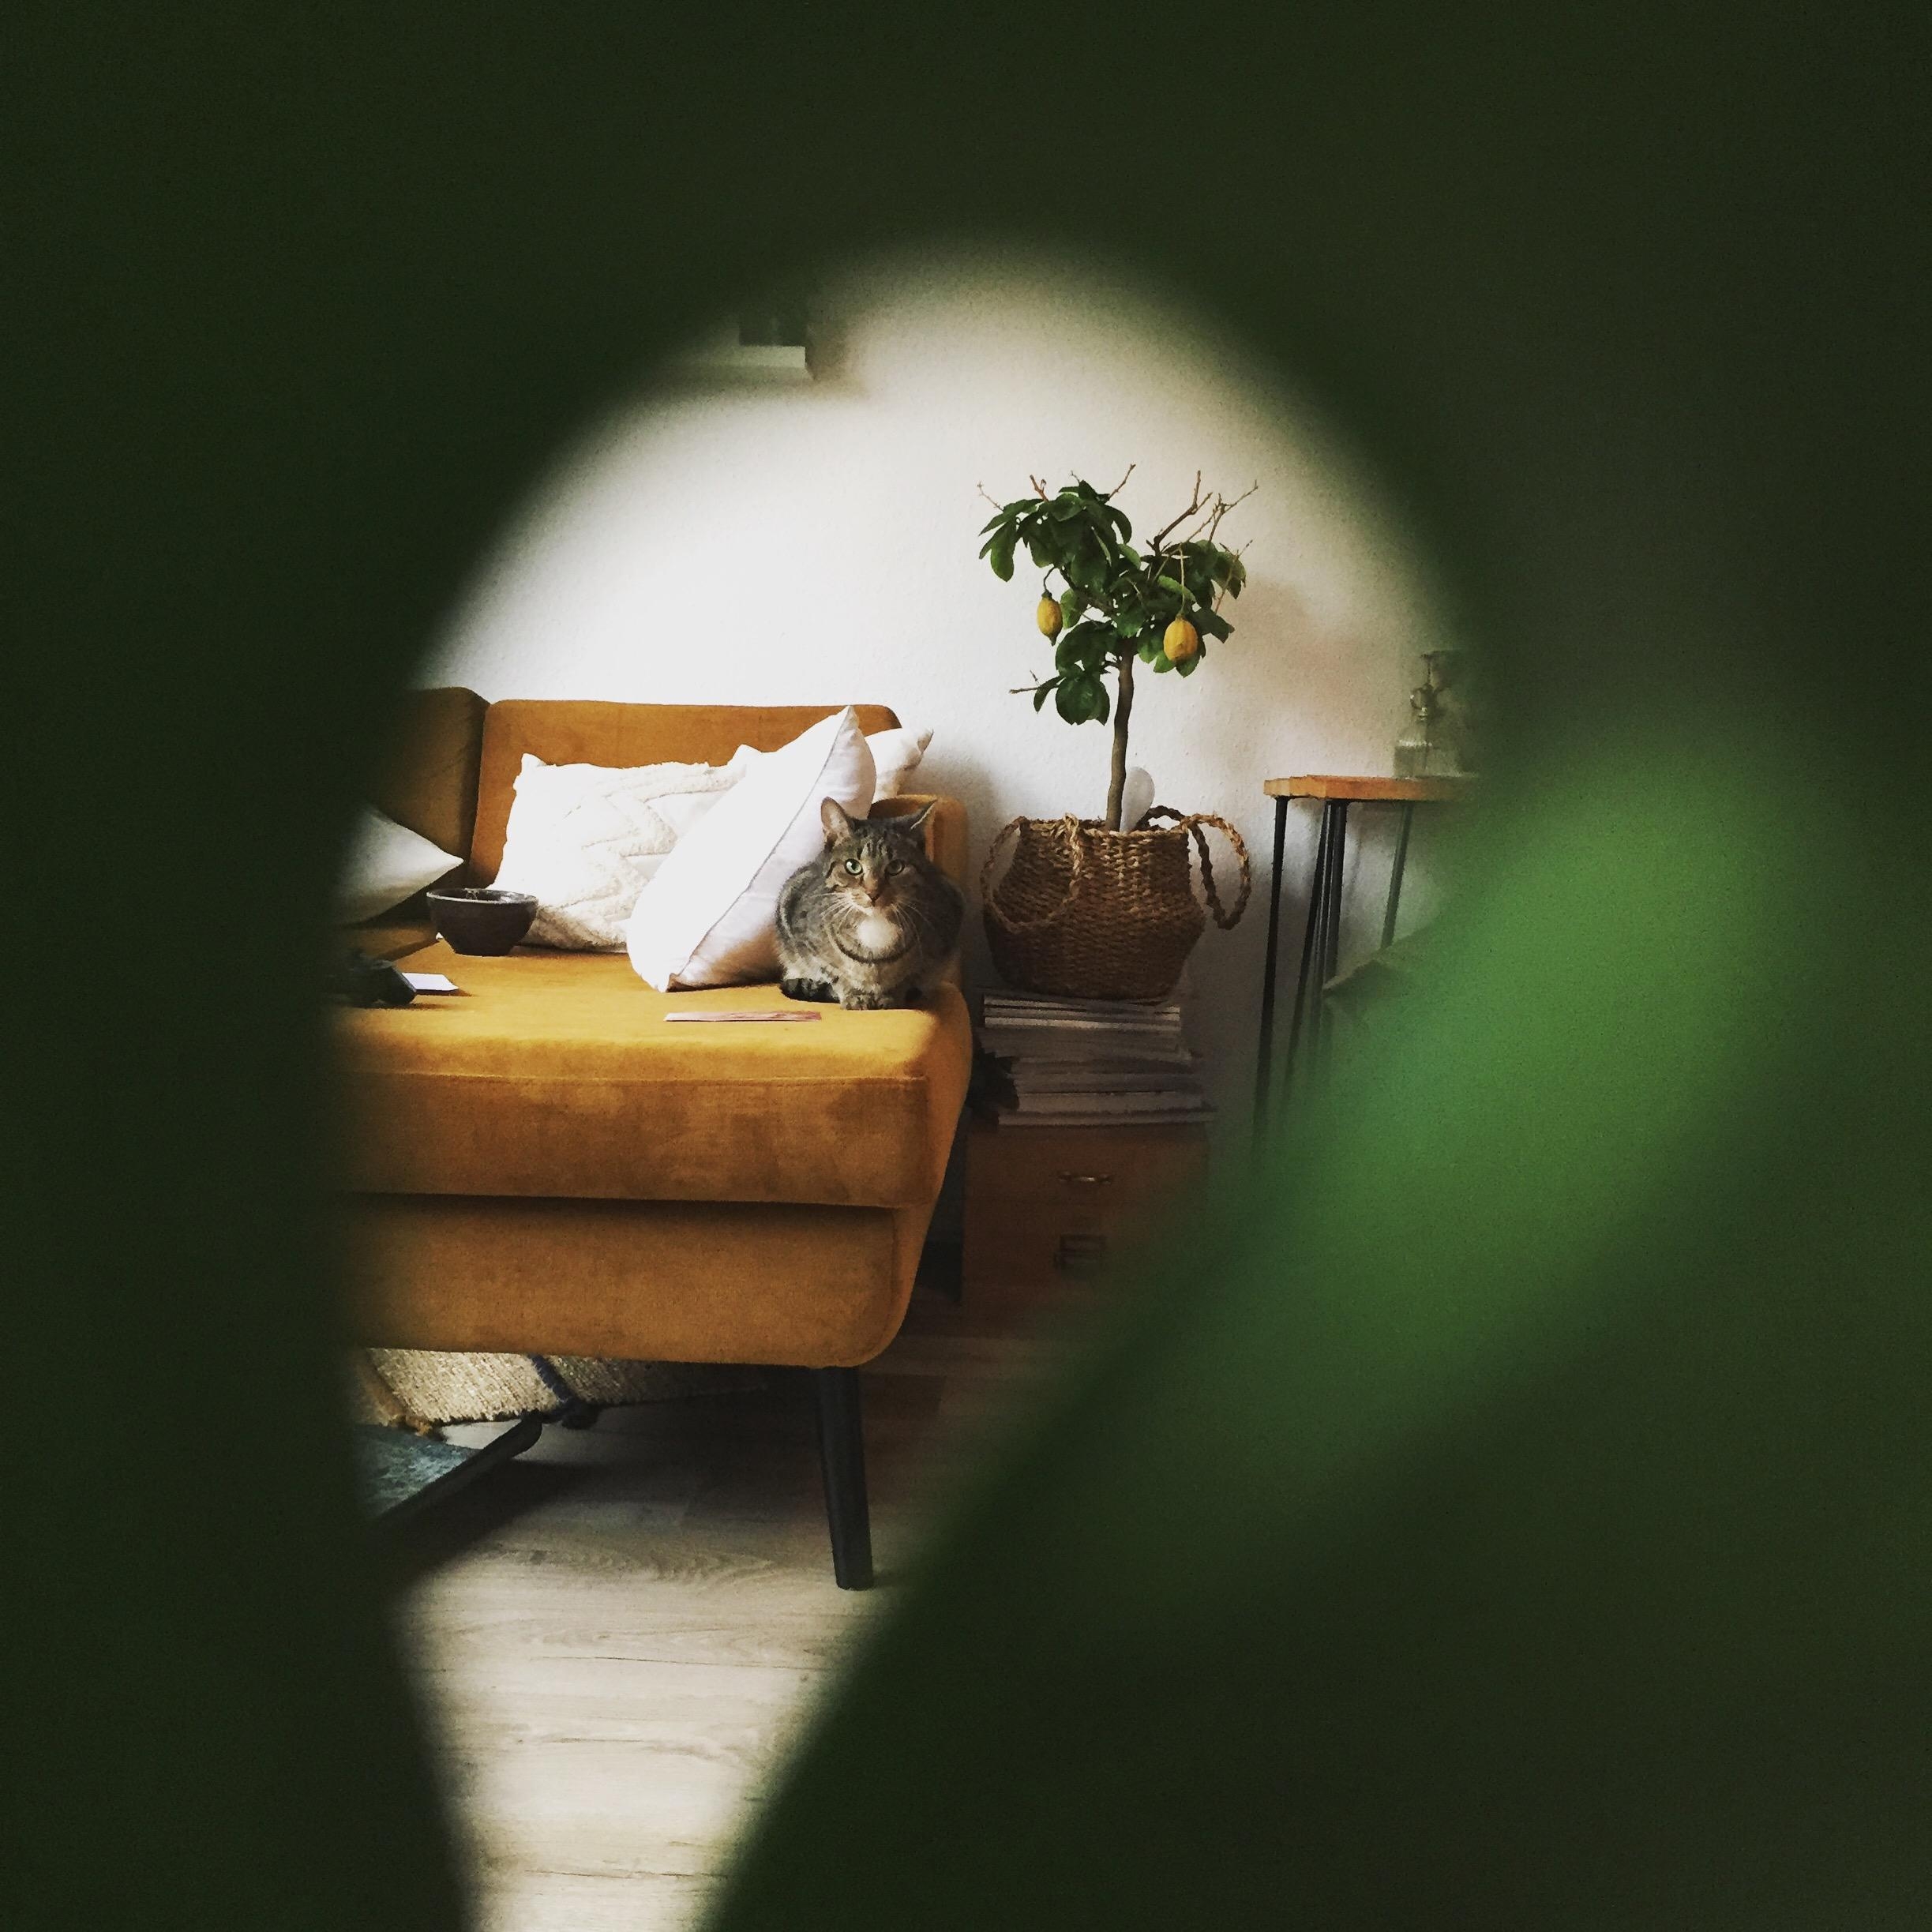 Eine neue Perspektive 
#cat #plantlover #monstera #couchstyle